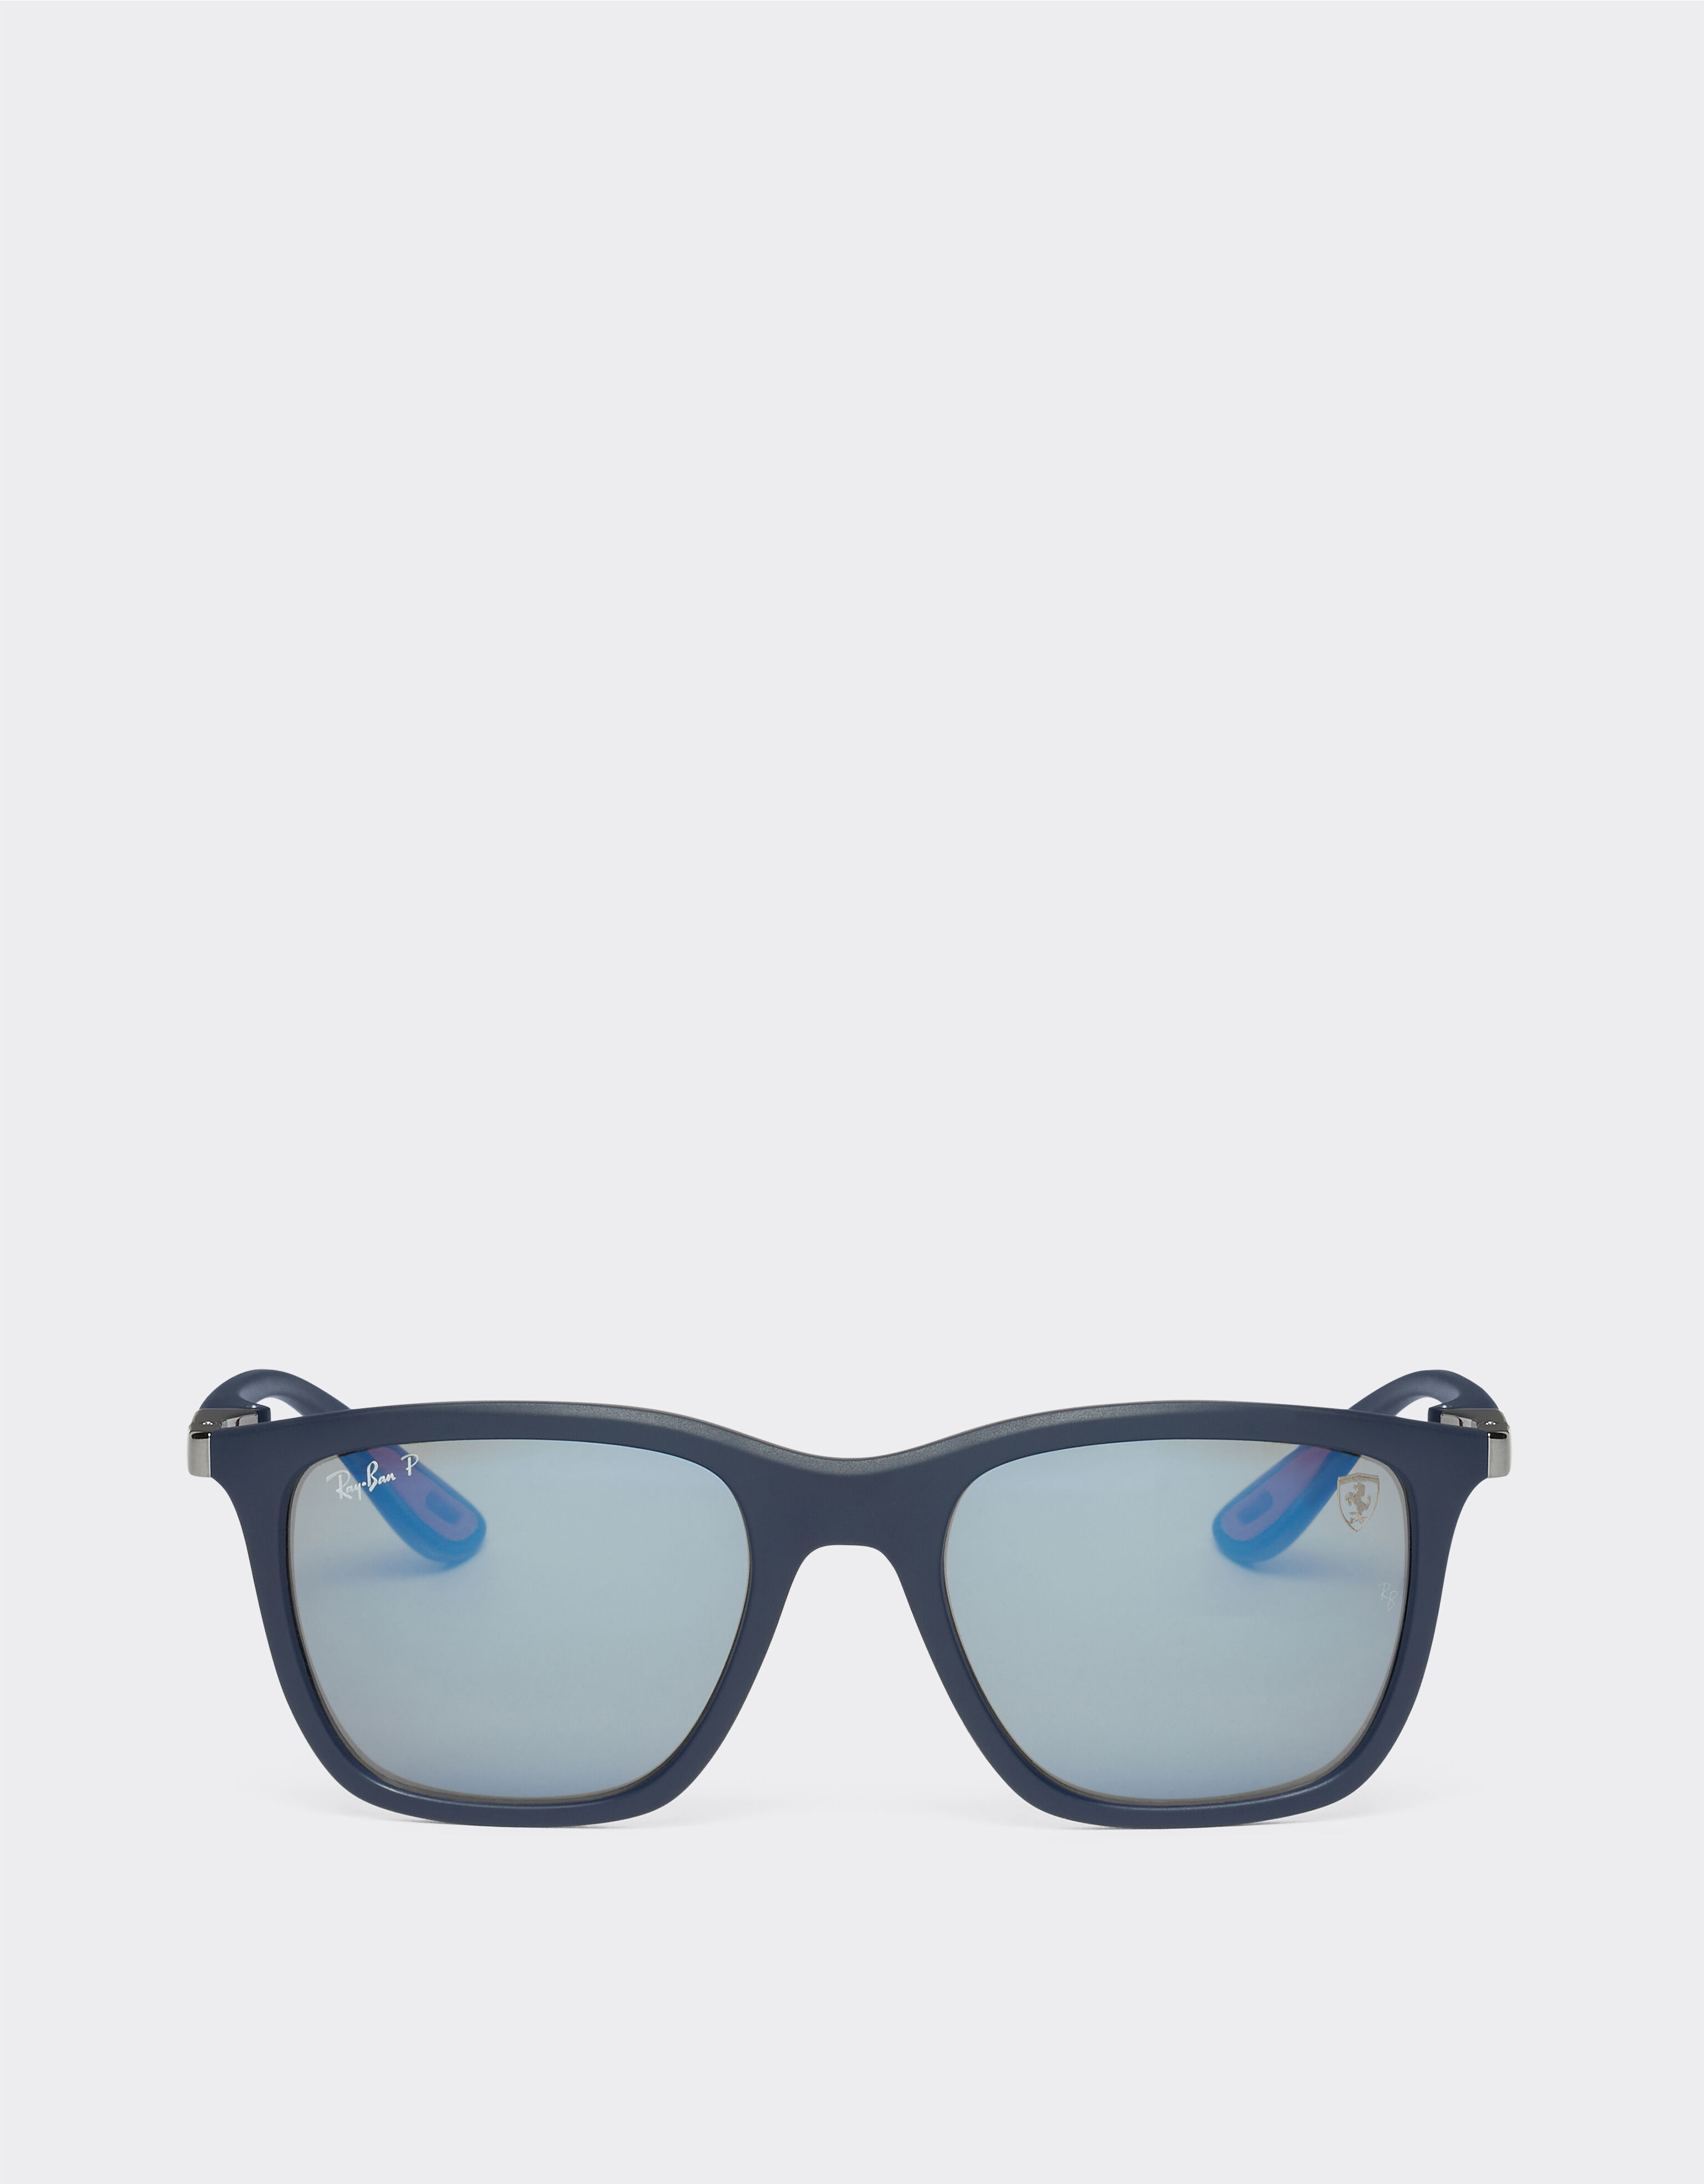 Ferrari Ray-Ban for Scuderia Ferrari 0RB4433M matt blue sunglasses with polarised mirror blue lenses Rosso Corsa F1135f